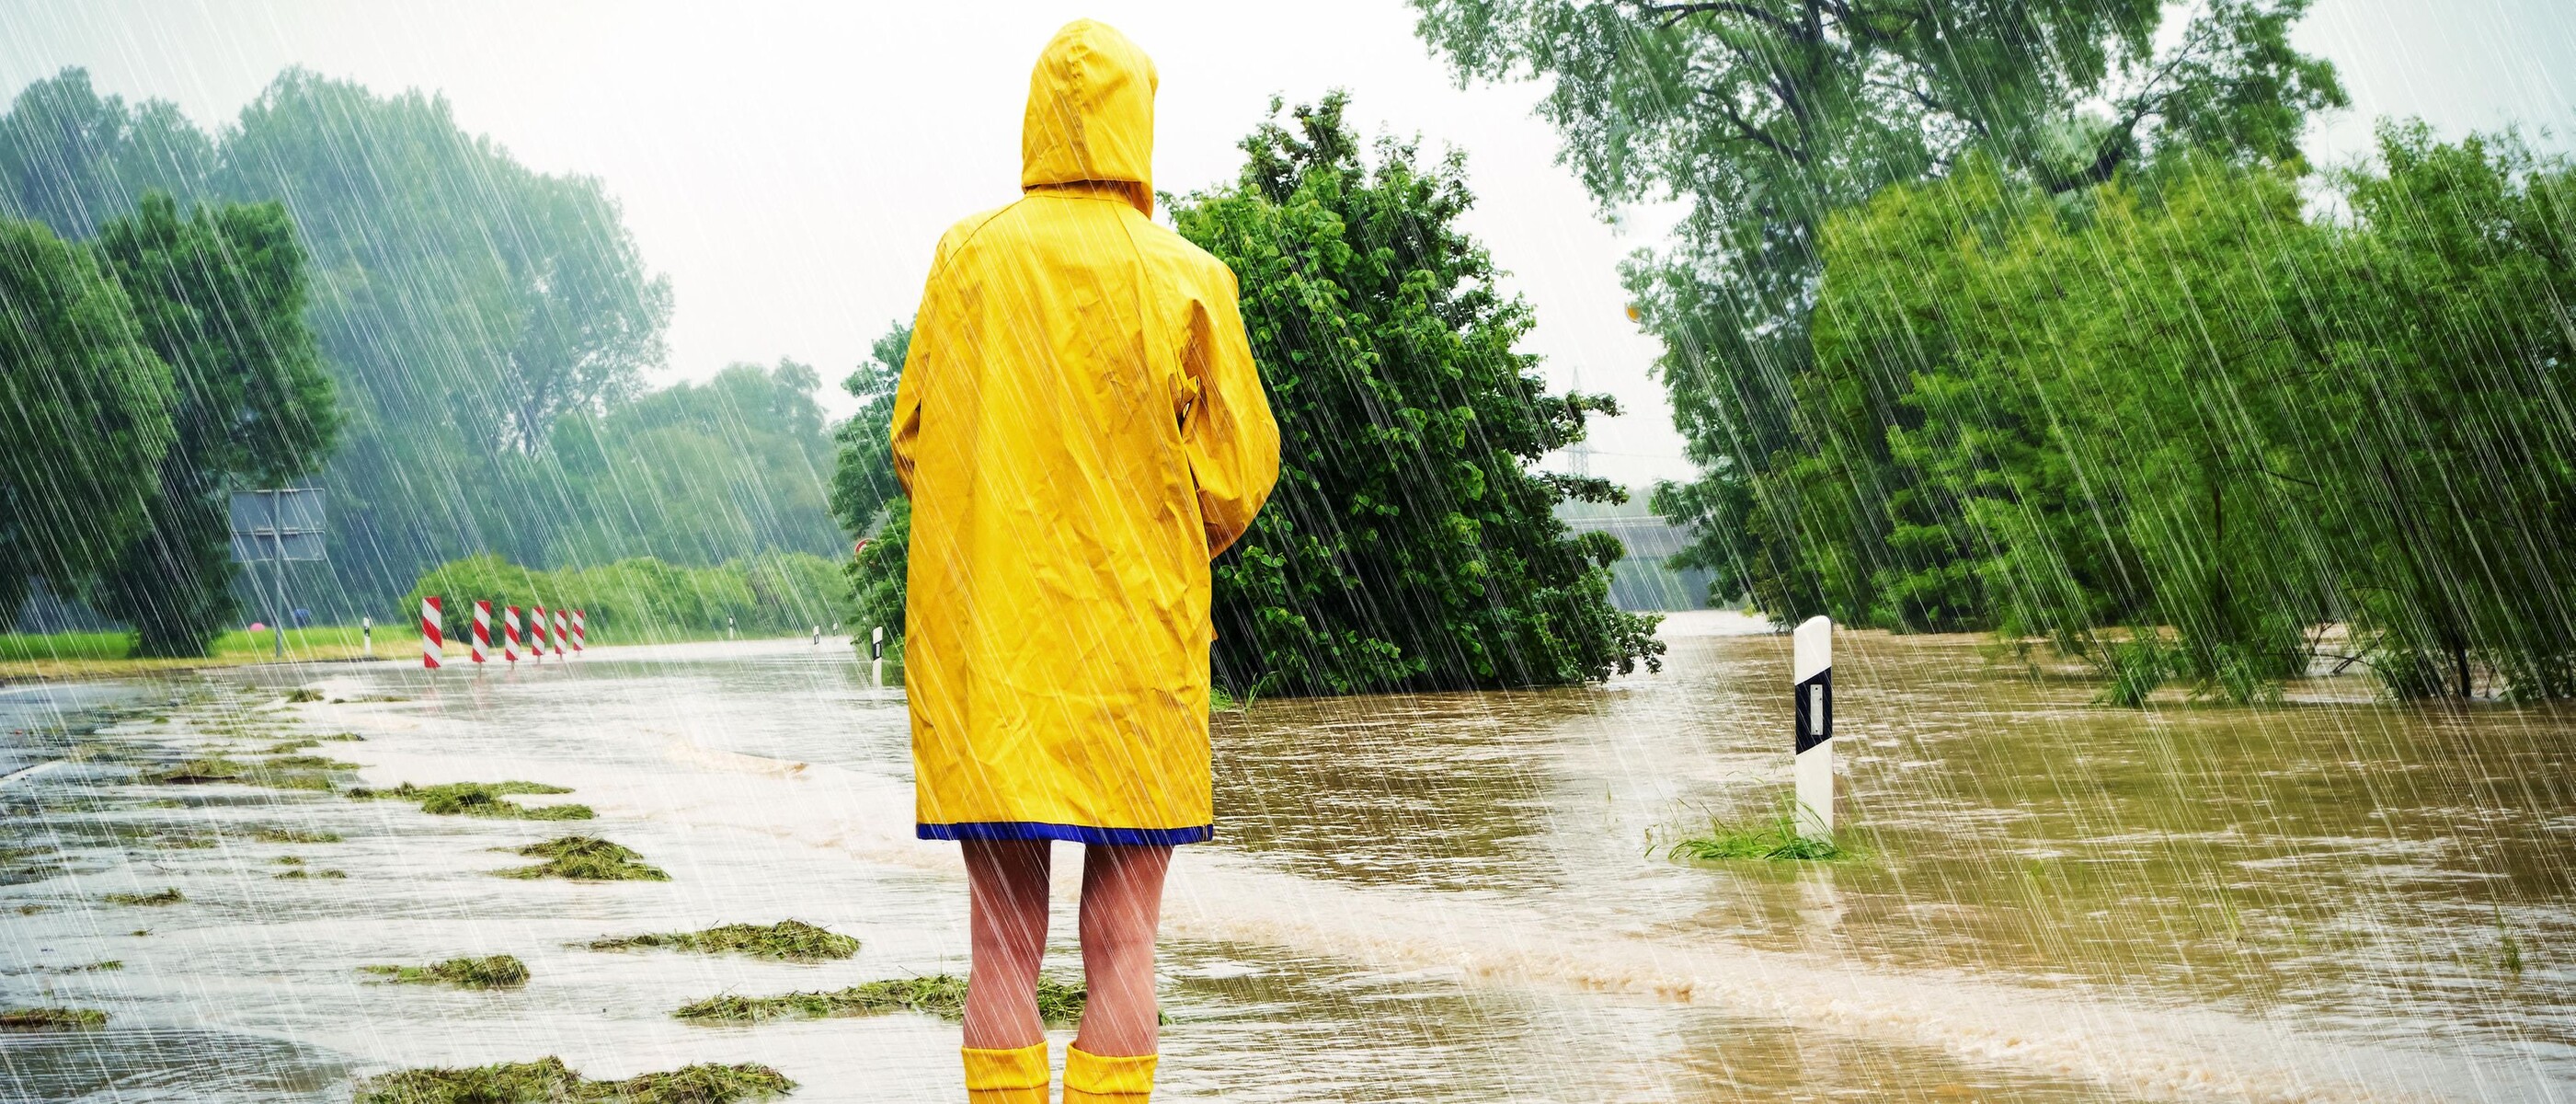 ชายสวมเสื้อกันฝนบนถนนที่ถูกน้ำท่วม